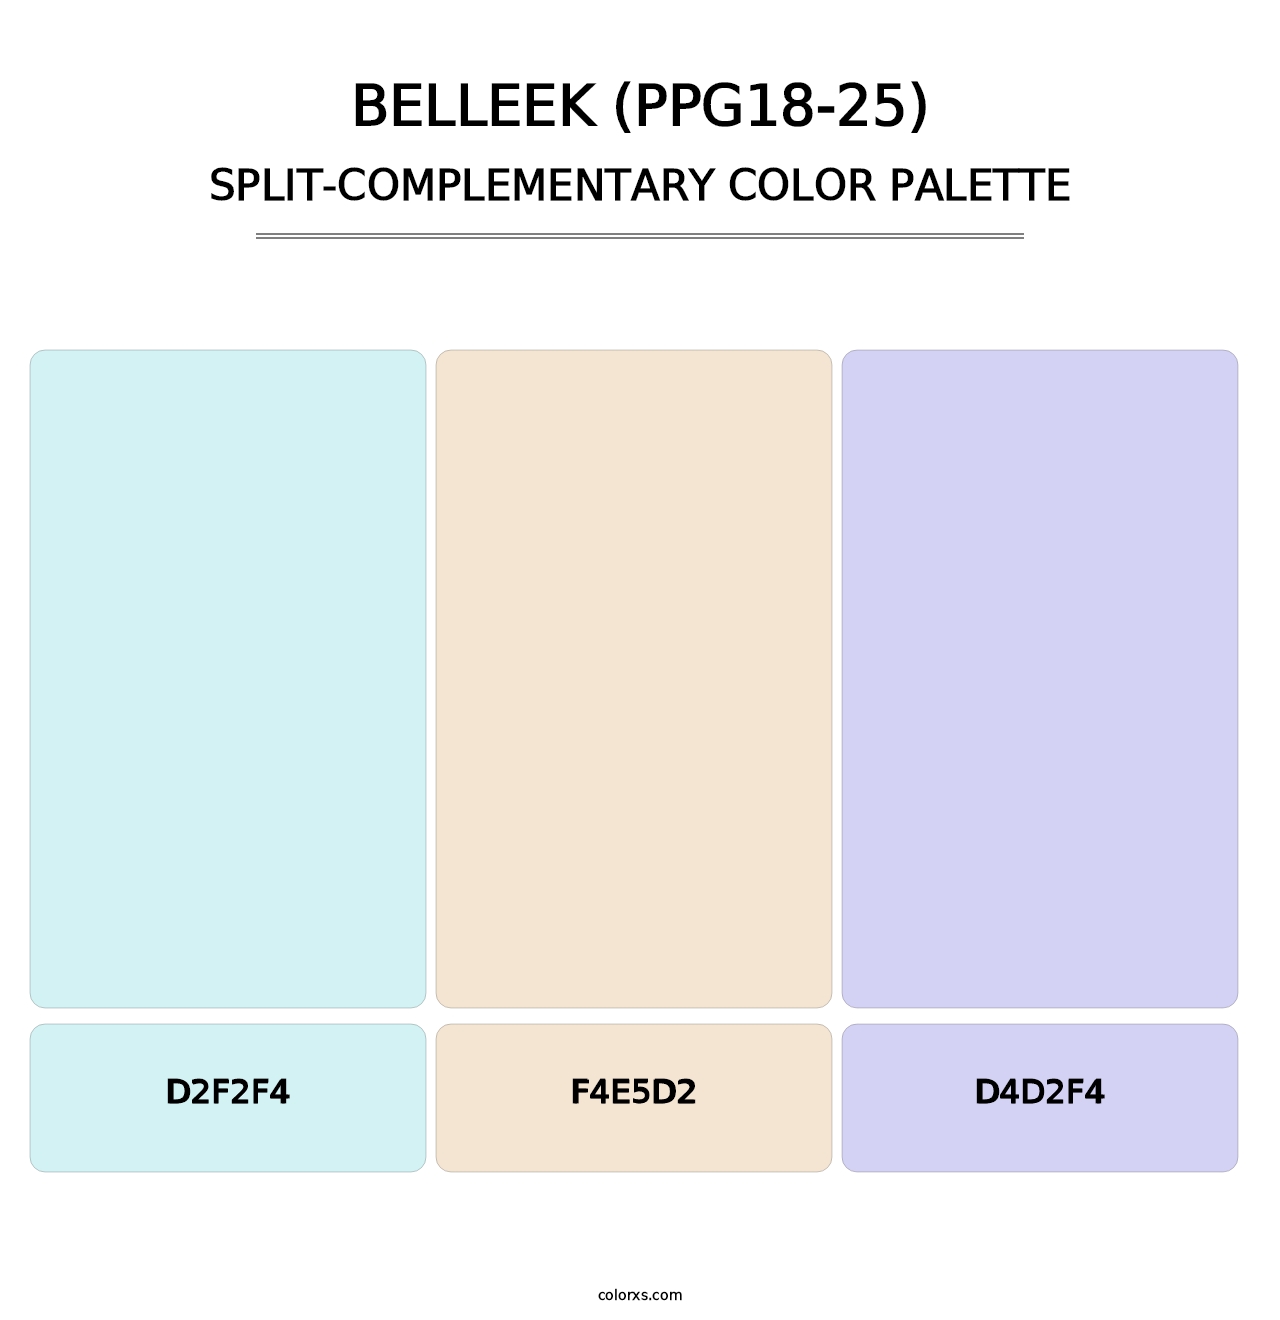 Belleek (PPG18-25) - Split-Complementary Color Palette